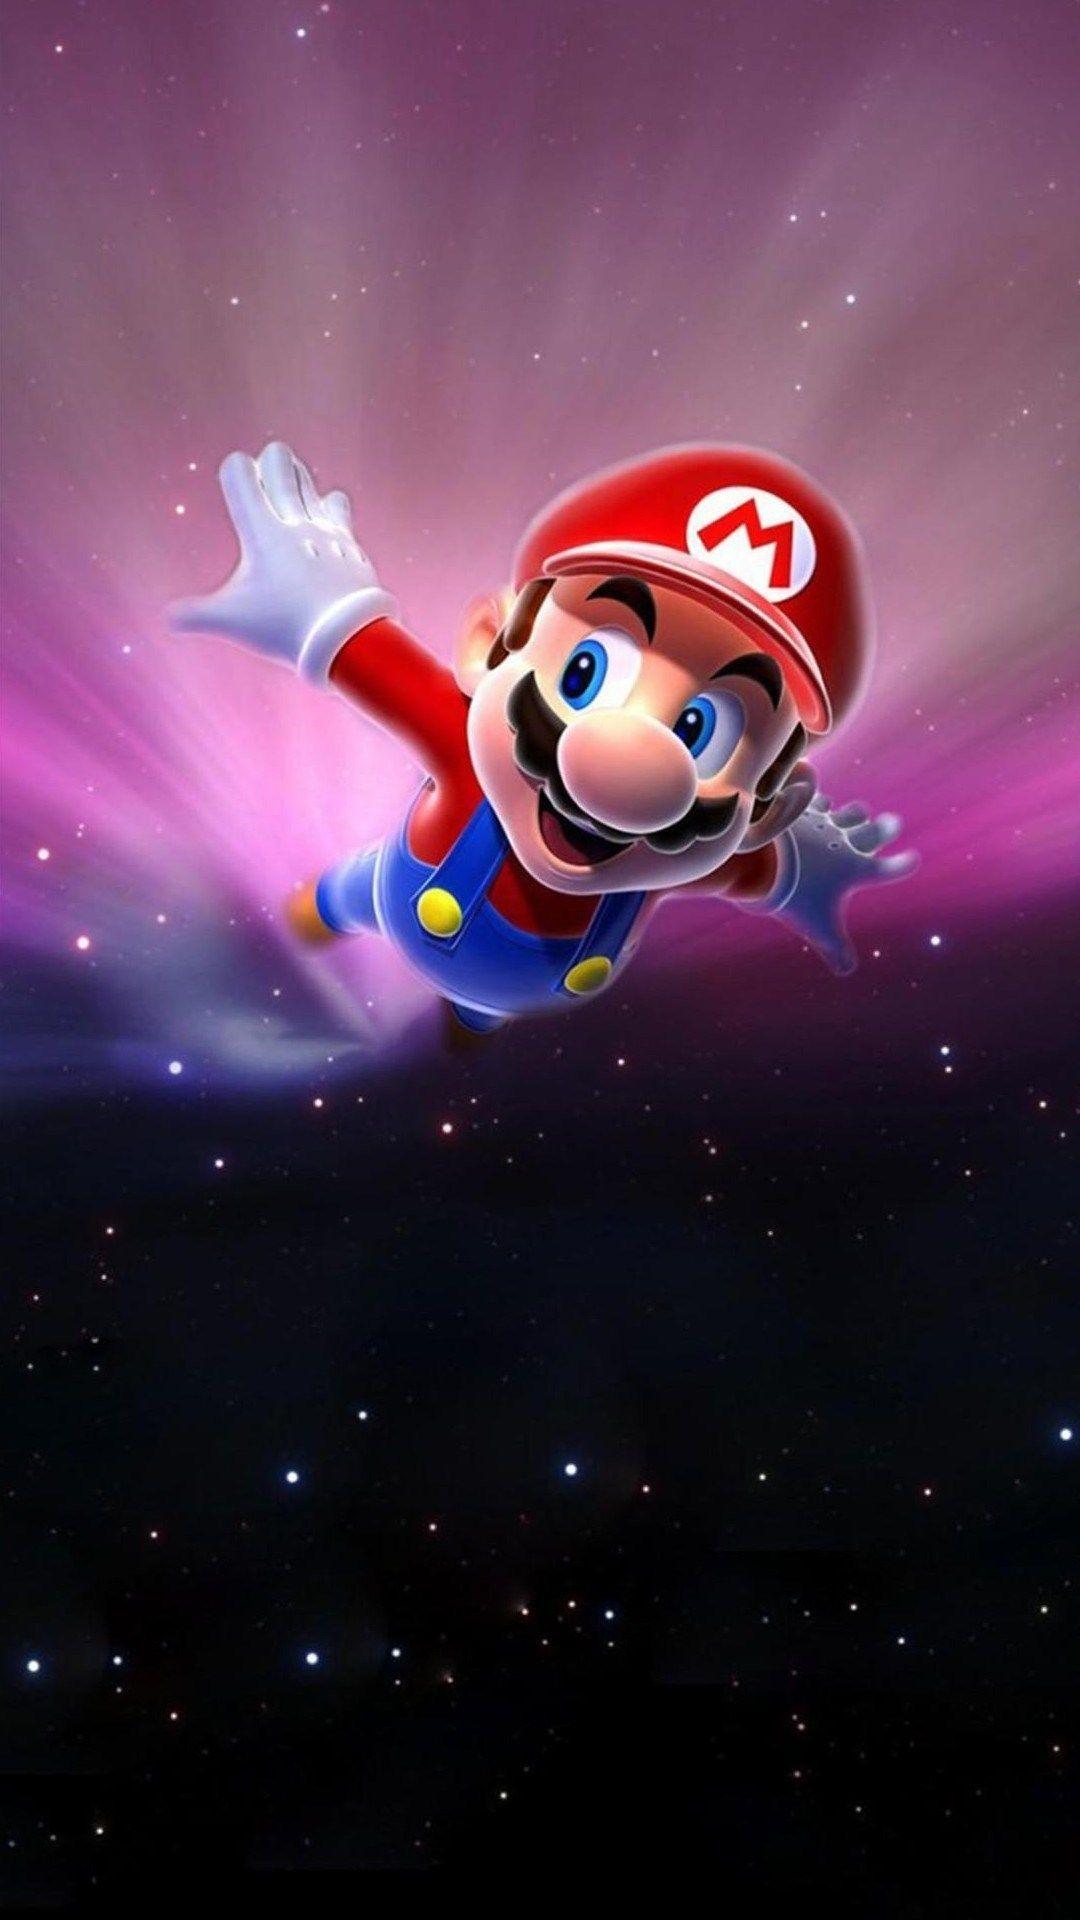 DanDareorg  Super Mario Galaxy Wallpaper 1024 x 768 Pixels